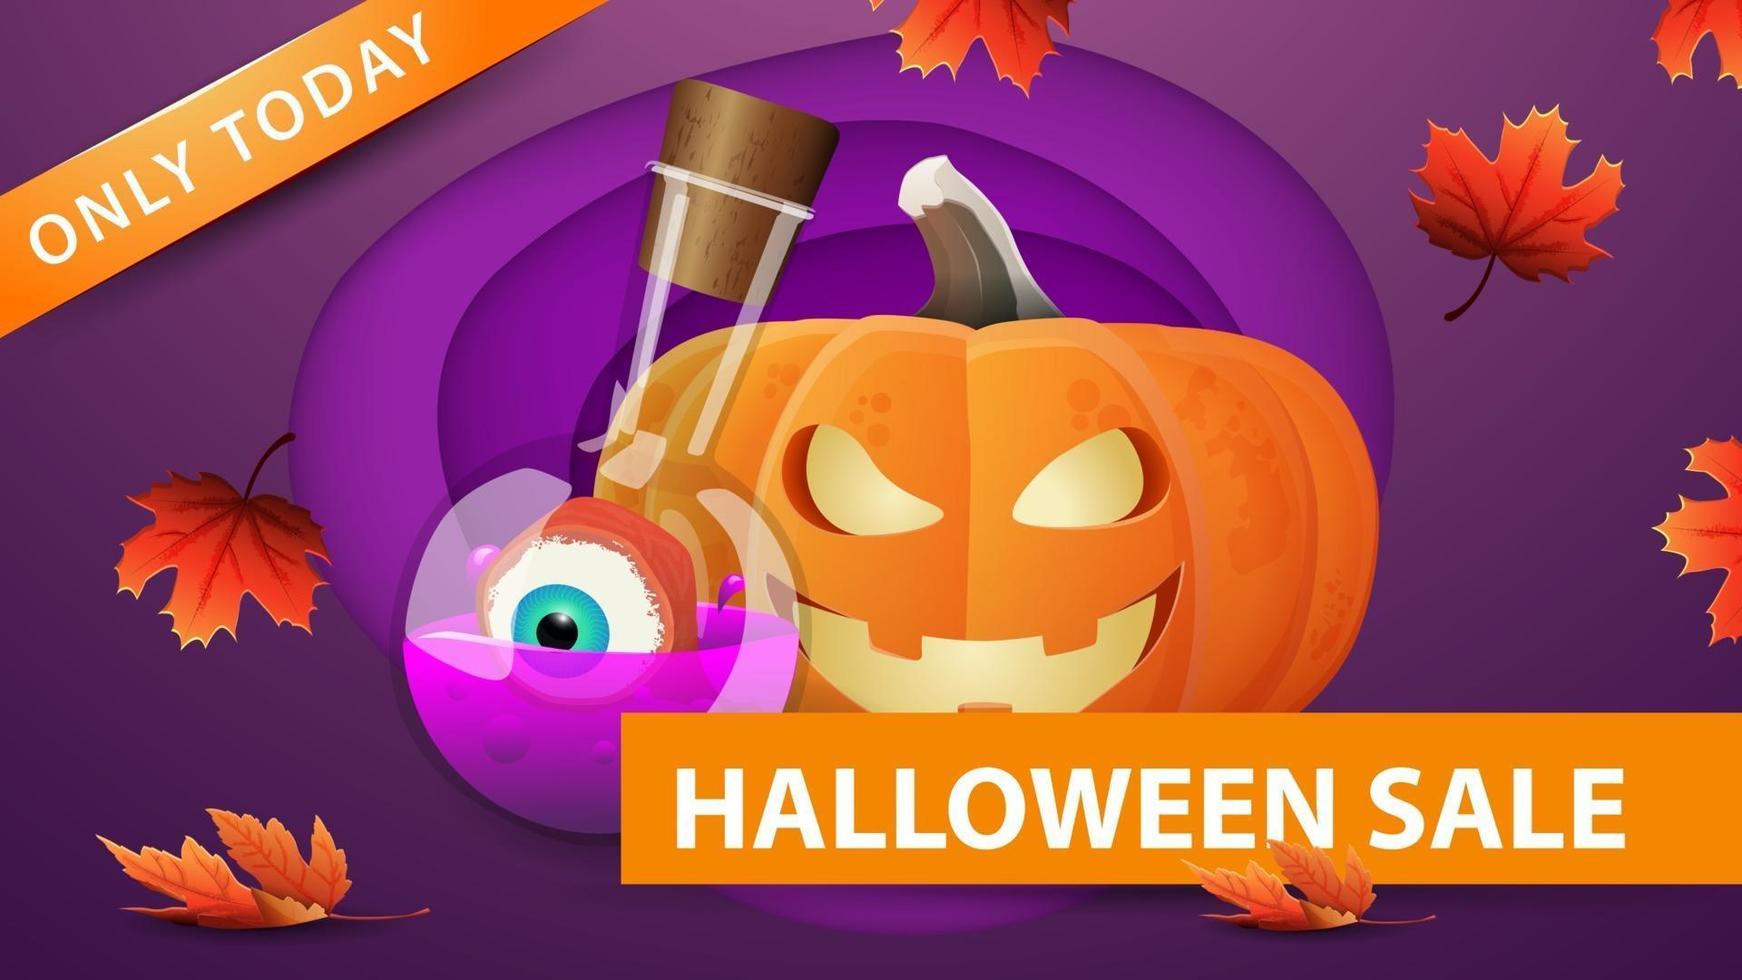 venda de halloween, banner da web de desconto roxo em estilo de corte de papel com jack abóbora e poção de bruxa. design moderno de banner de desconto vetor